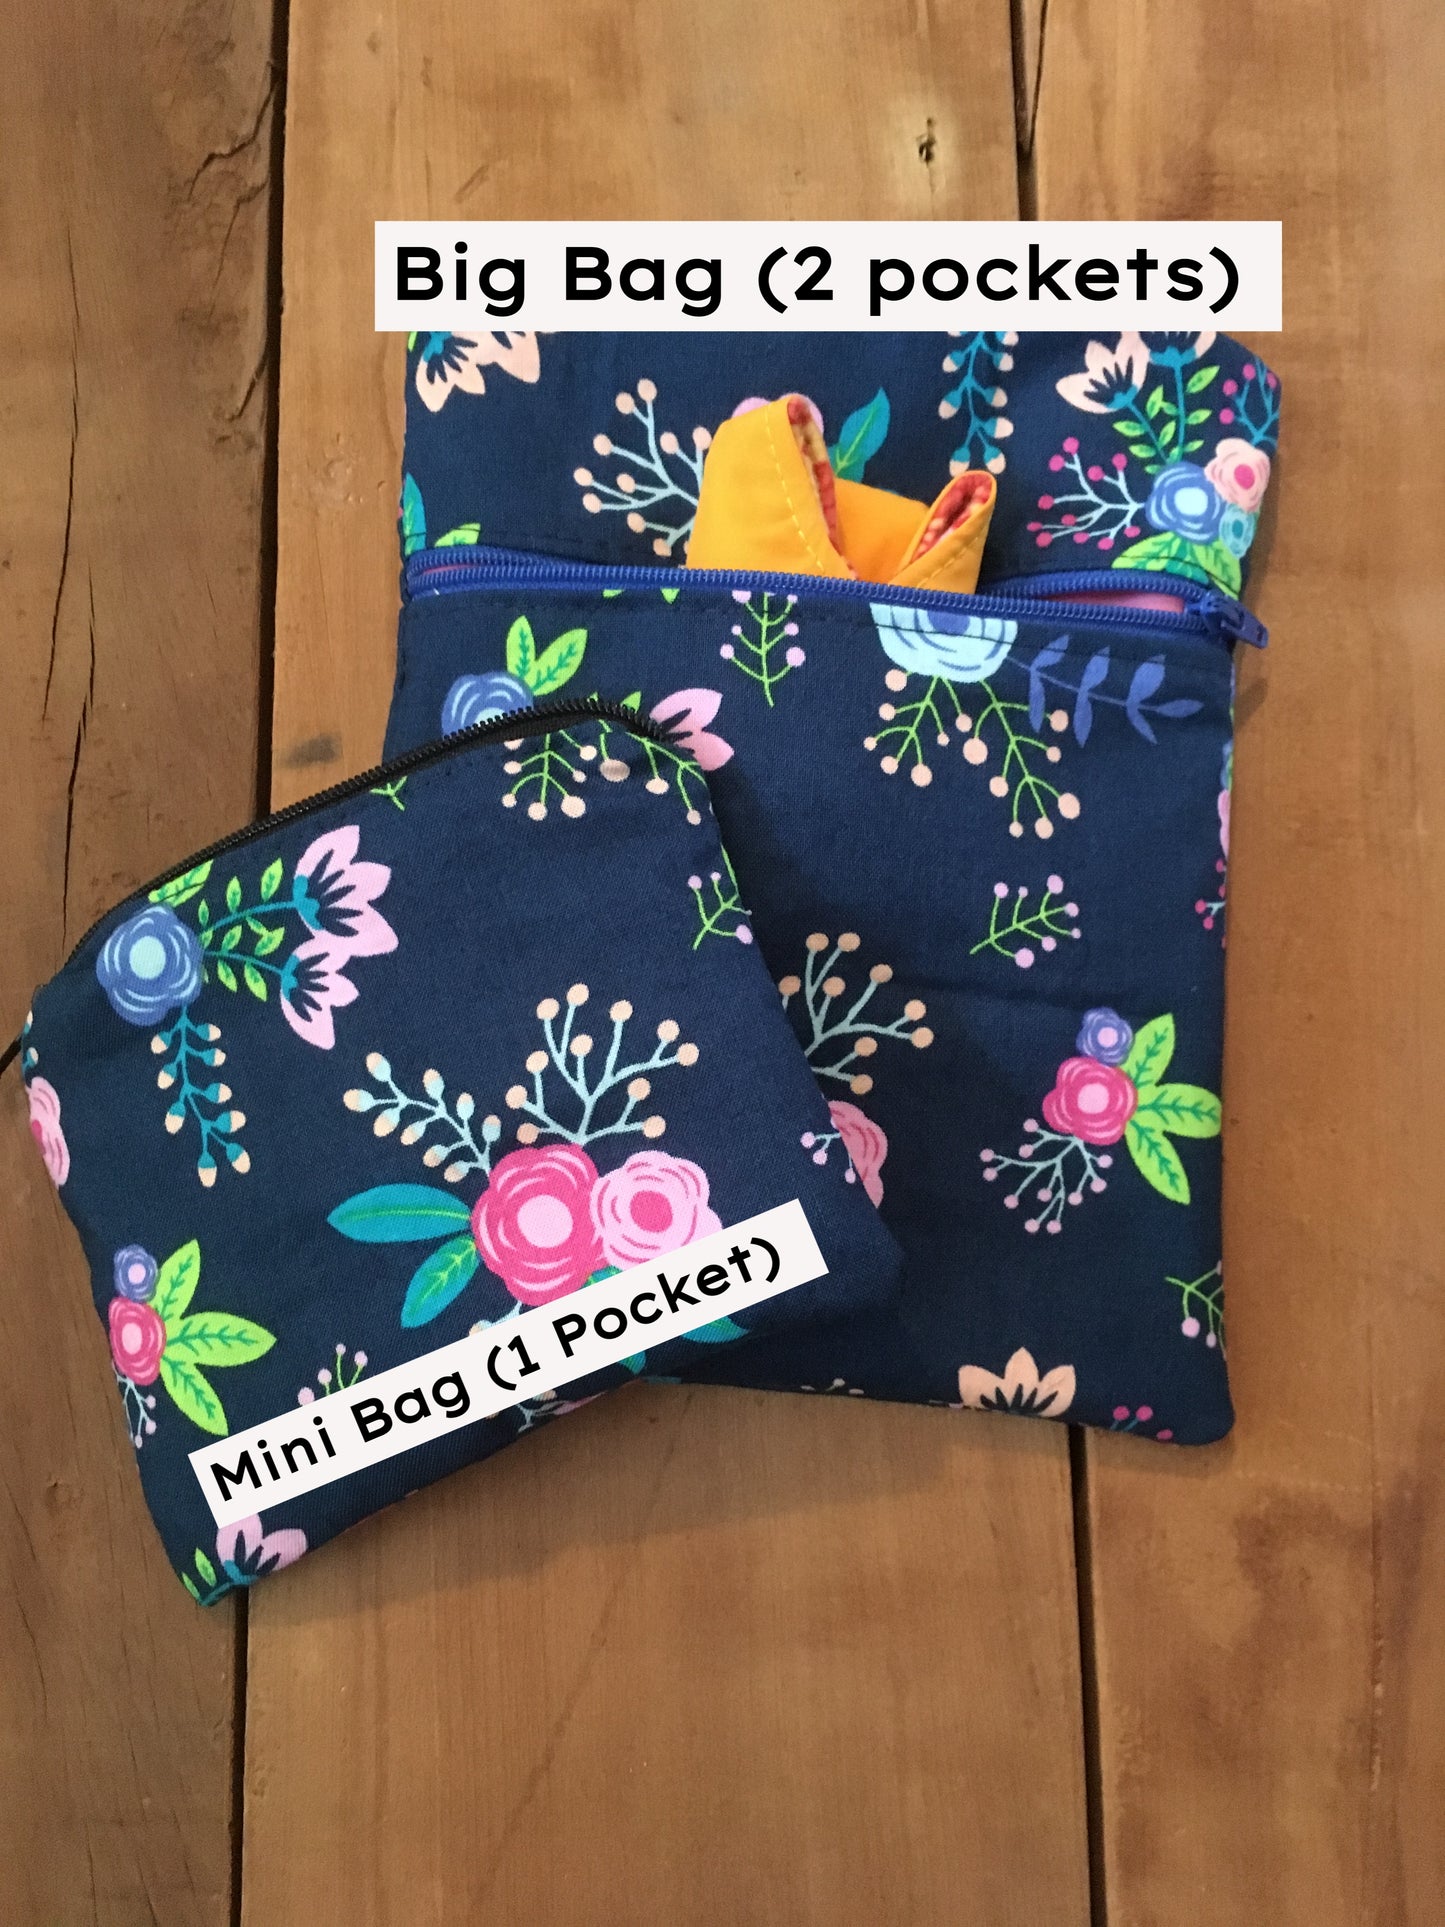 example of bags "big" bag has 2 pockets & "mini" bag has 1 pocket 